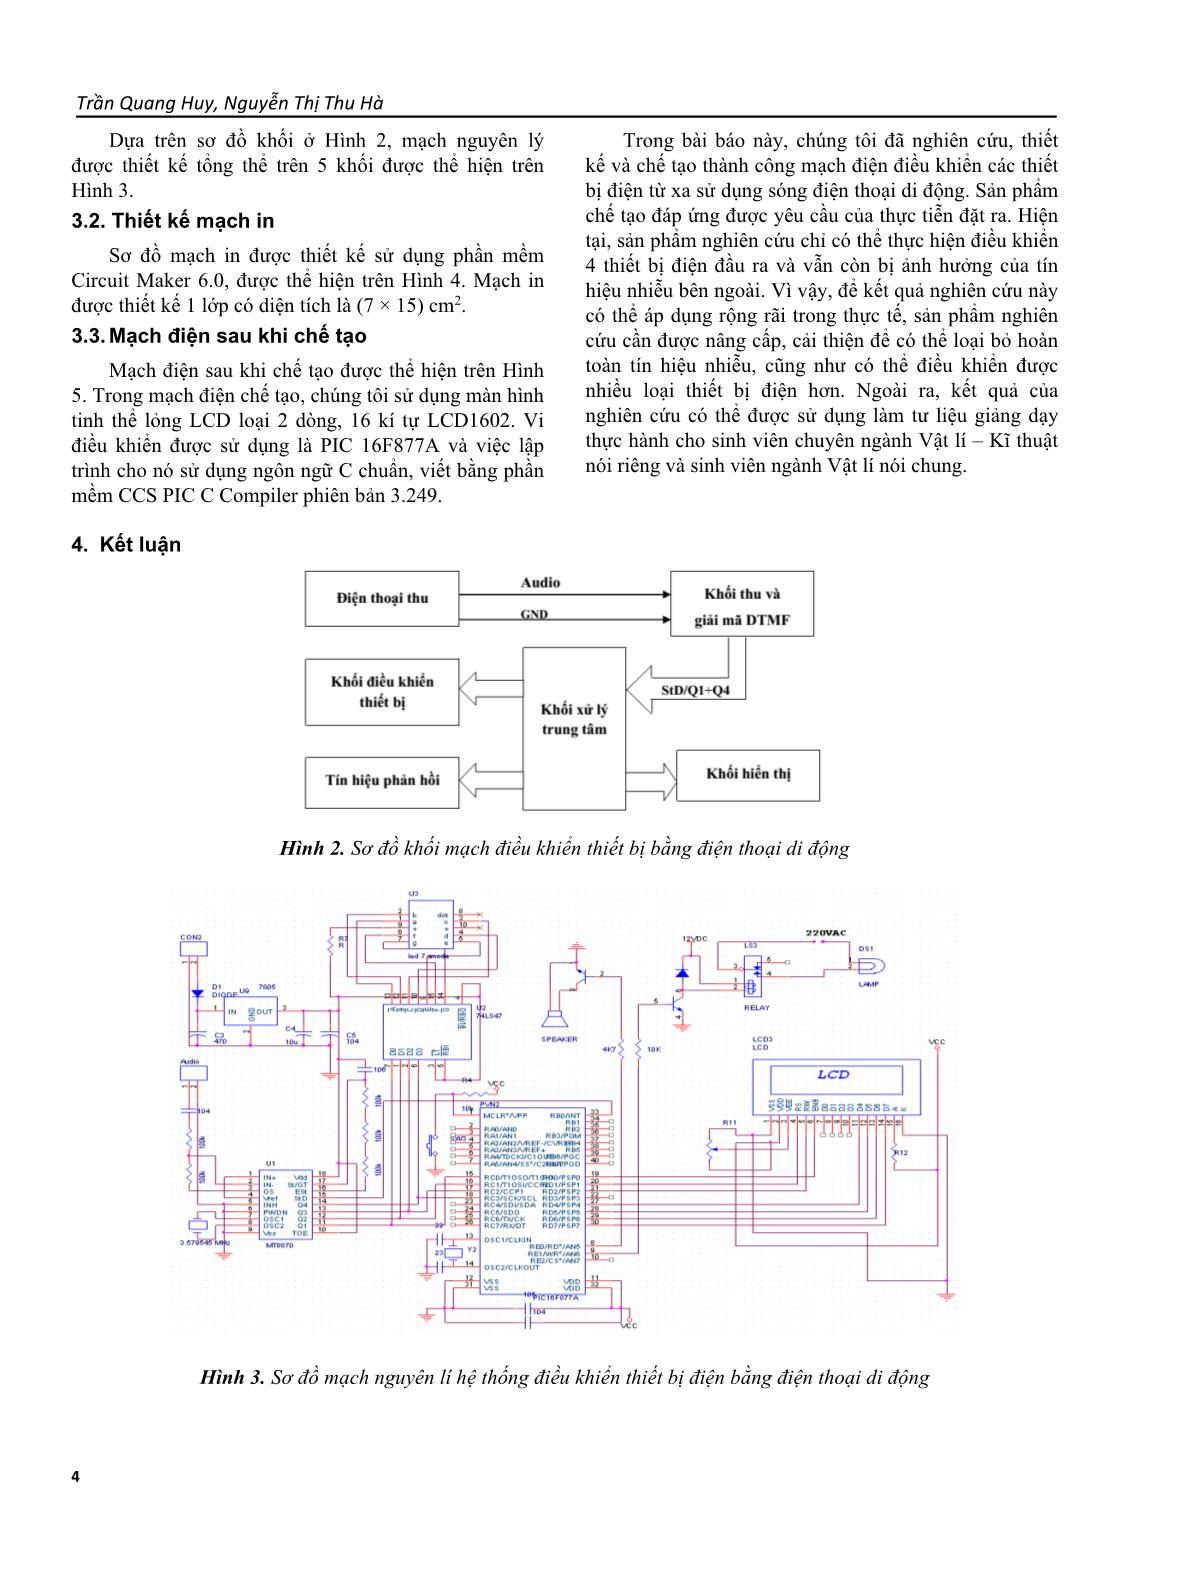 Nghiên cứu thiết kế, chế tạo mạch điều khiển thiết bị điện bằng điện thoại di động trang 4